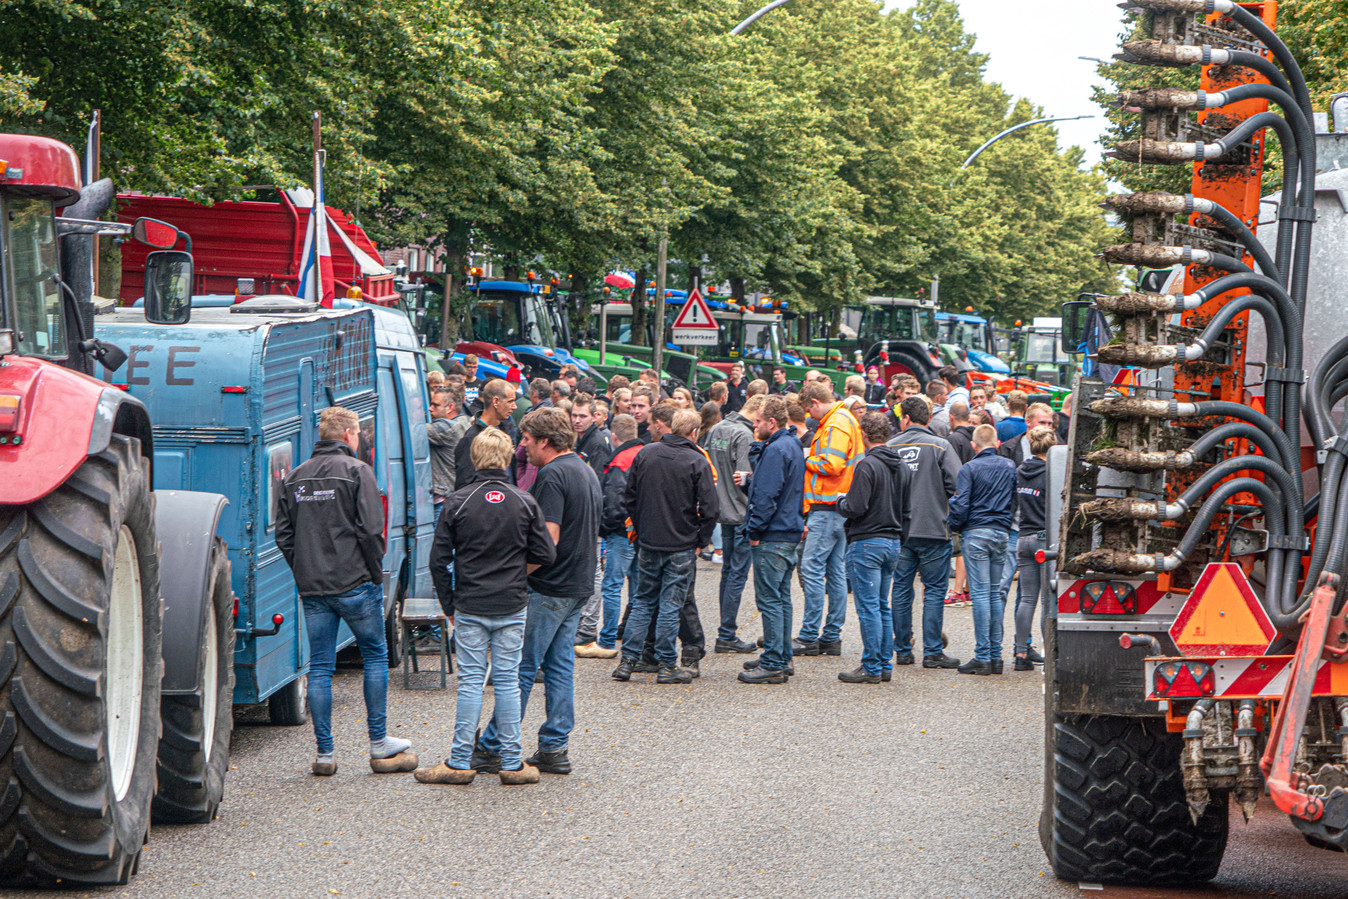 In heel Nederland, zoals hier in Zwolle, vinden boerenprotesten tegen de stikstofmaatregelen van het kabinet plaats.